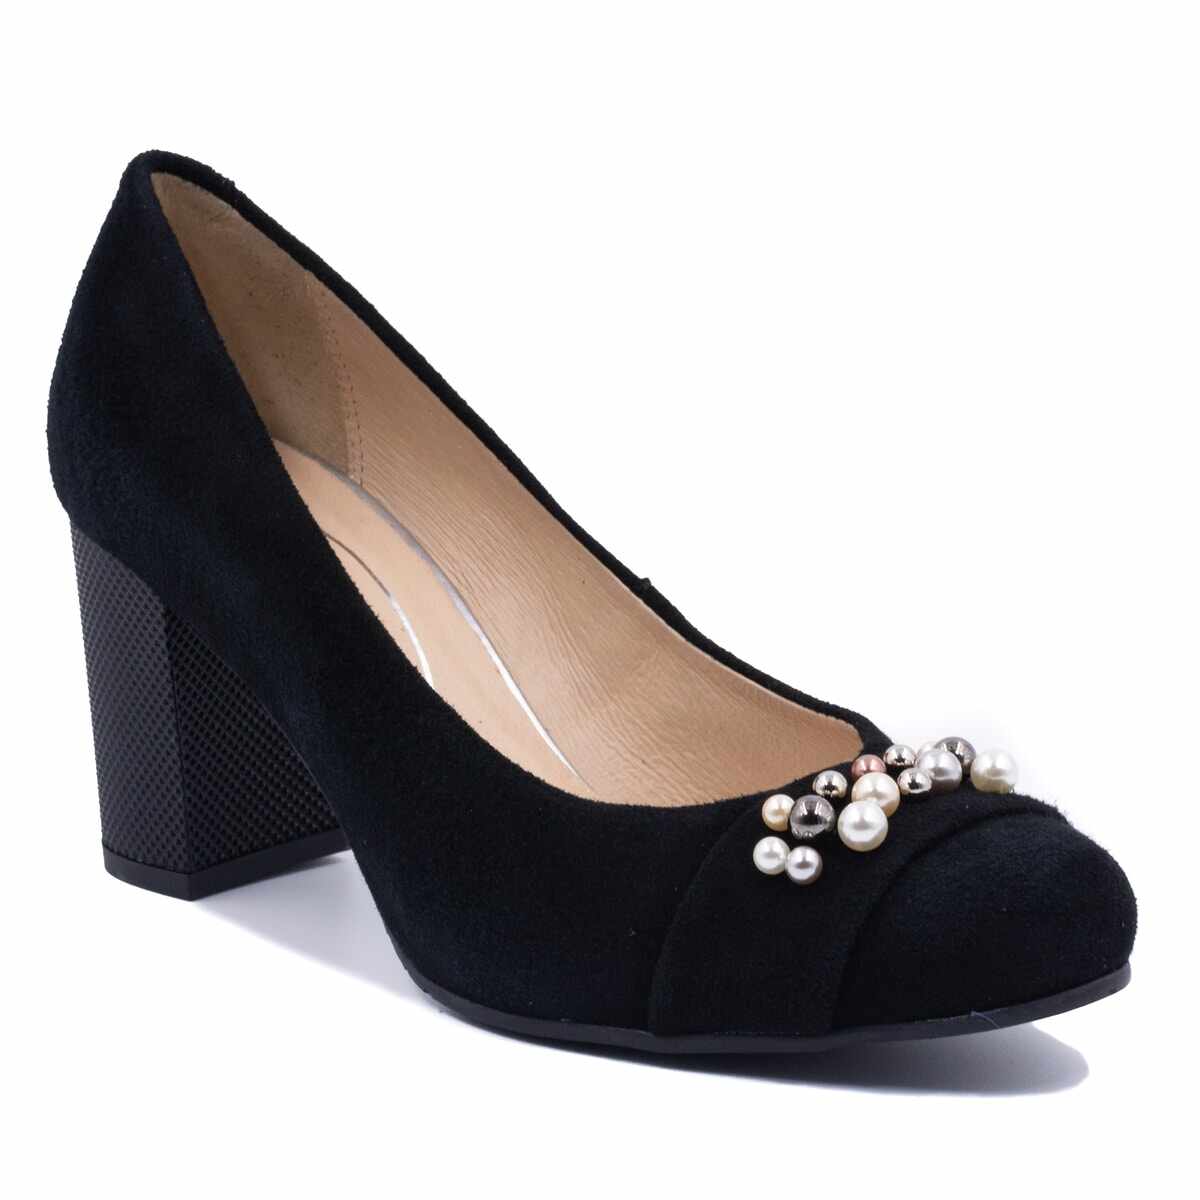 Pantofi eleganti dama, Beatrixx, din piele naturala, negri